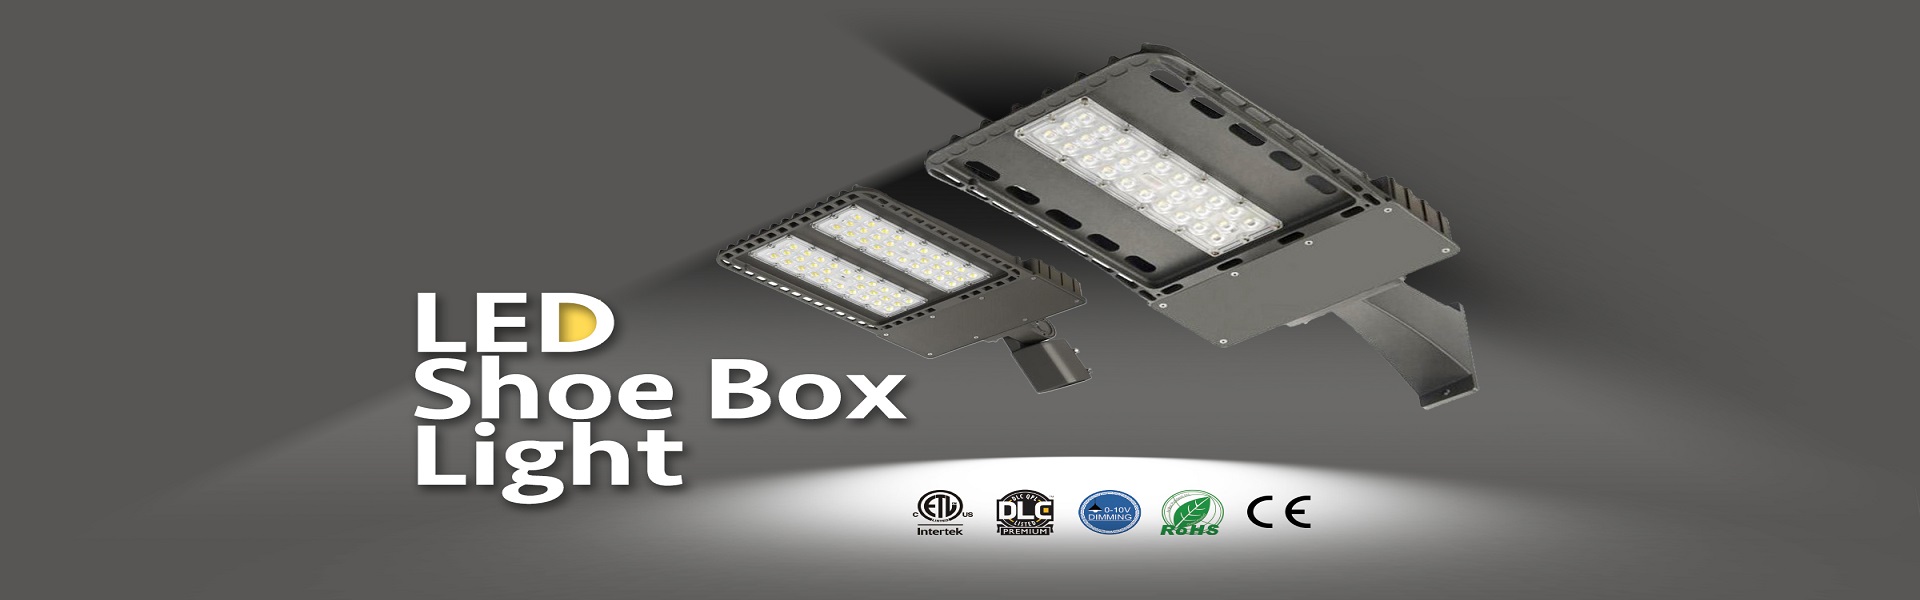 15-LED-Shoe-Box-Light